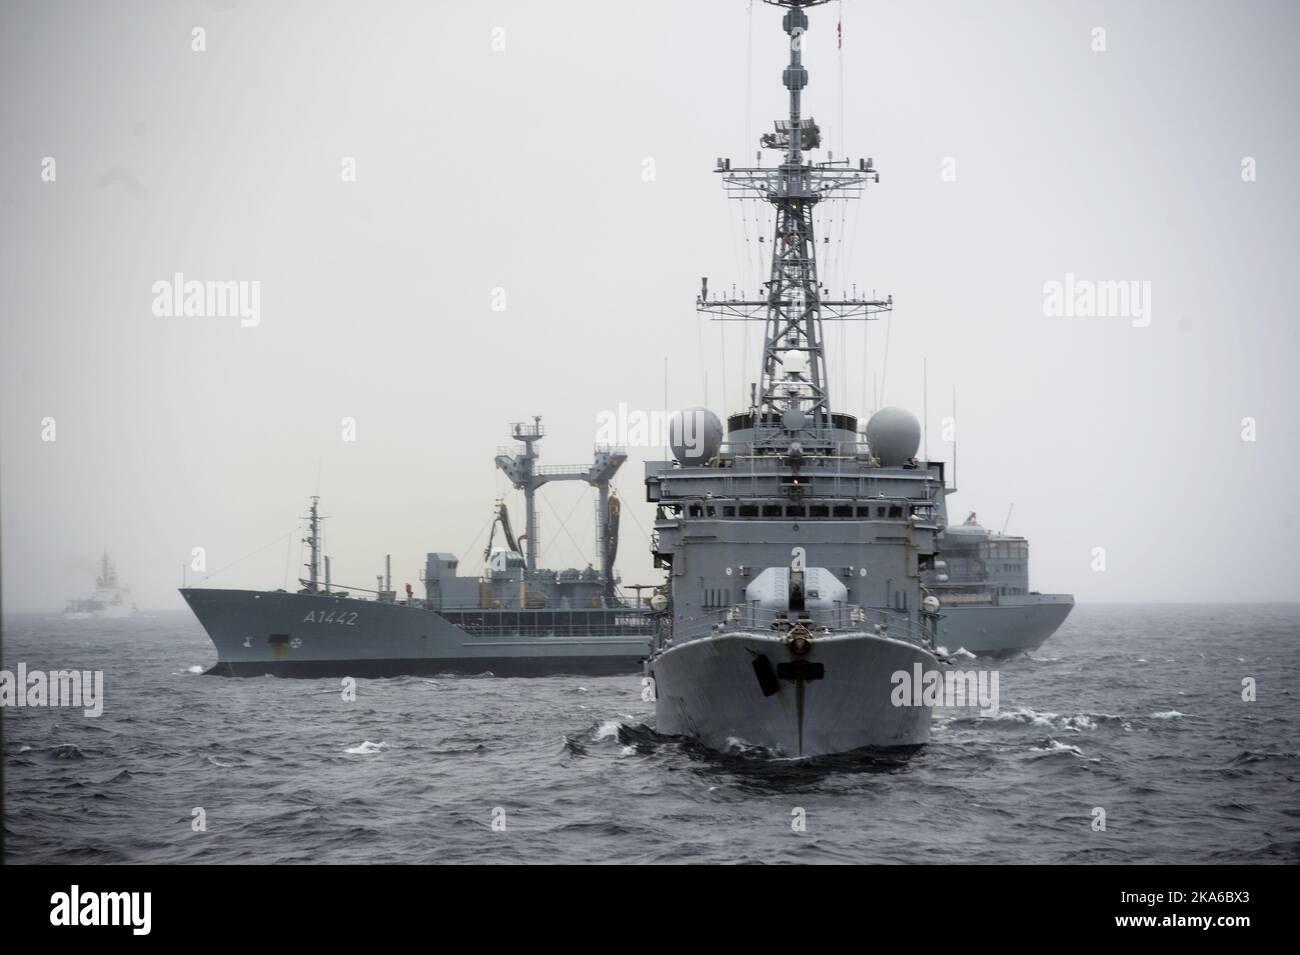 Bergen, Norvège 20150504. L'exercice sous-marin de l'OTAN, Dynamic Mongoose 2015, se déroule ces jours-ci dans les eaux au large de Bergen. Voici un navire français en premier plan et FGS Spessart allemand derrière. Photo: Marit HomMedal / NTB scanpix Banque D'Images